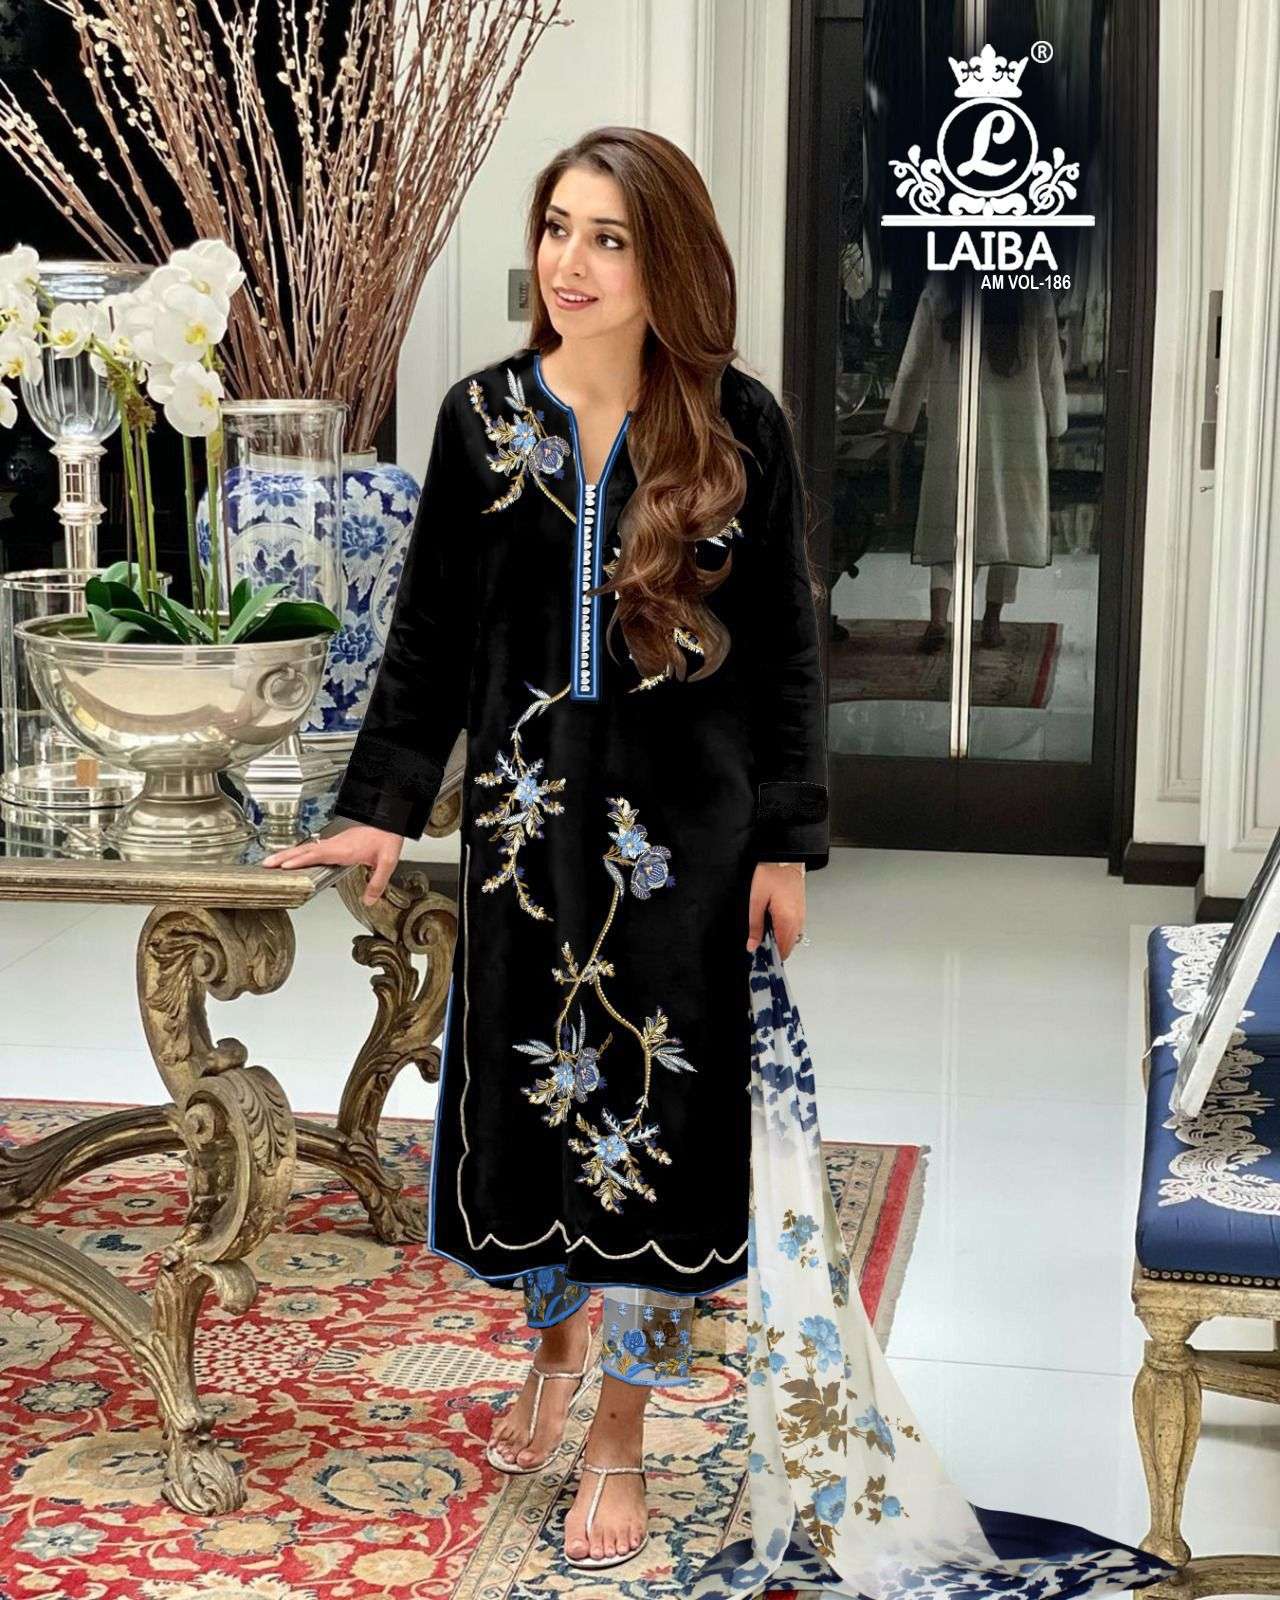 laiba am vol-186 stylish designer pakistani salwar suits catalogue wholesale price surat